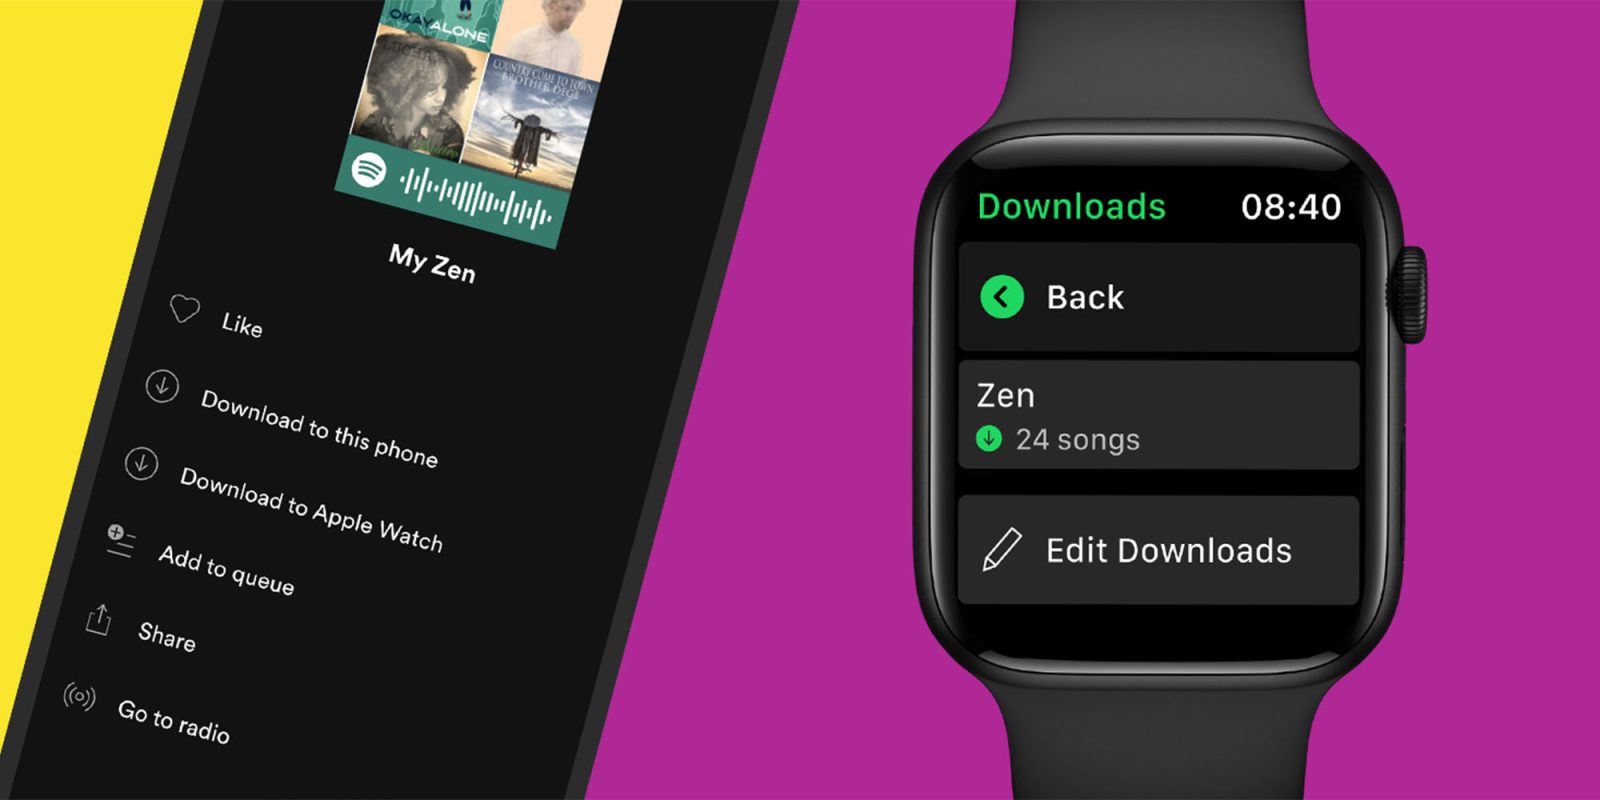 Spotify Apple Watch offline playback